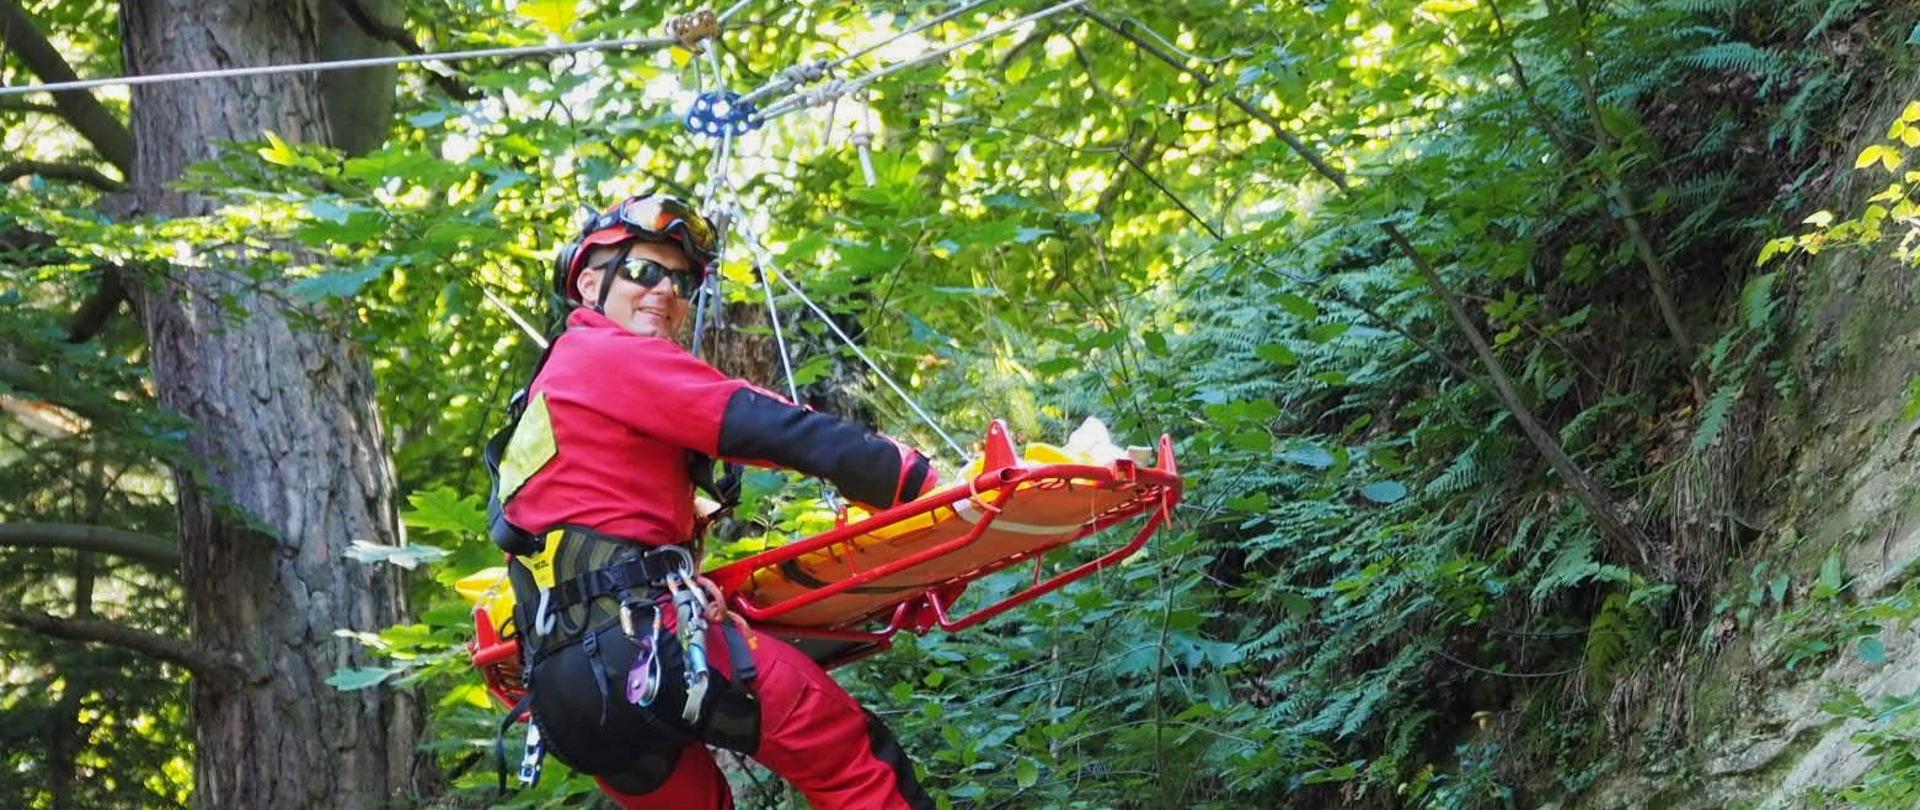 Na zdjeciu widoczny jest ratownik wysokościowy w czerwonym kombinezonie wyposażony w sprzęt ratownictwa wysokościowego. Ewakuuje poszkodowanego na noszach. W tle tereny leśne.